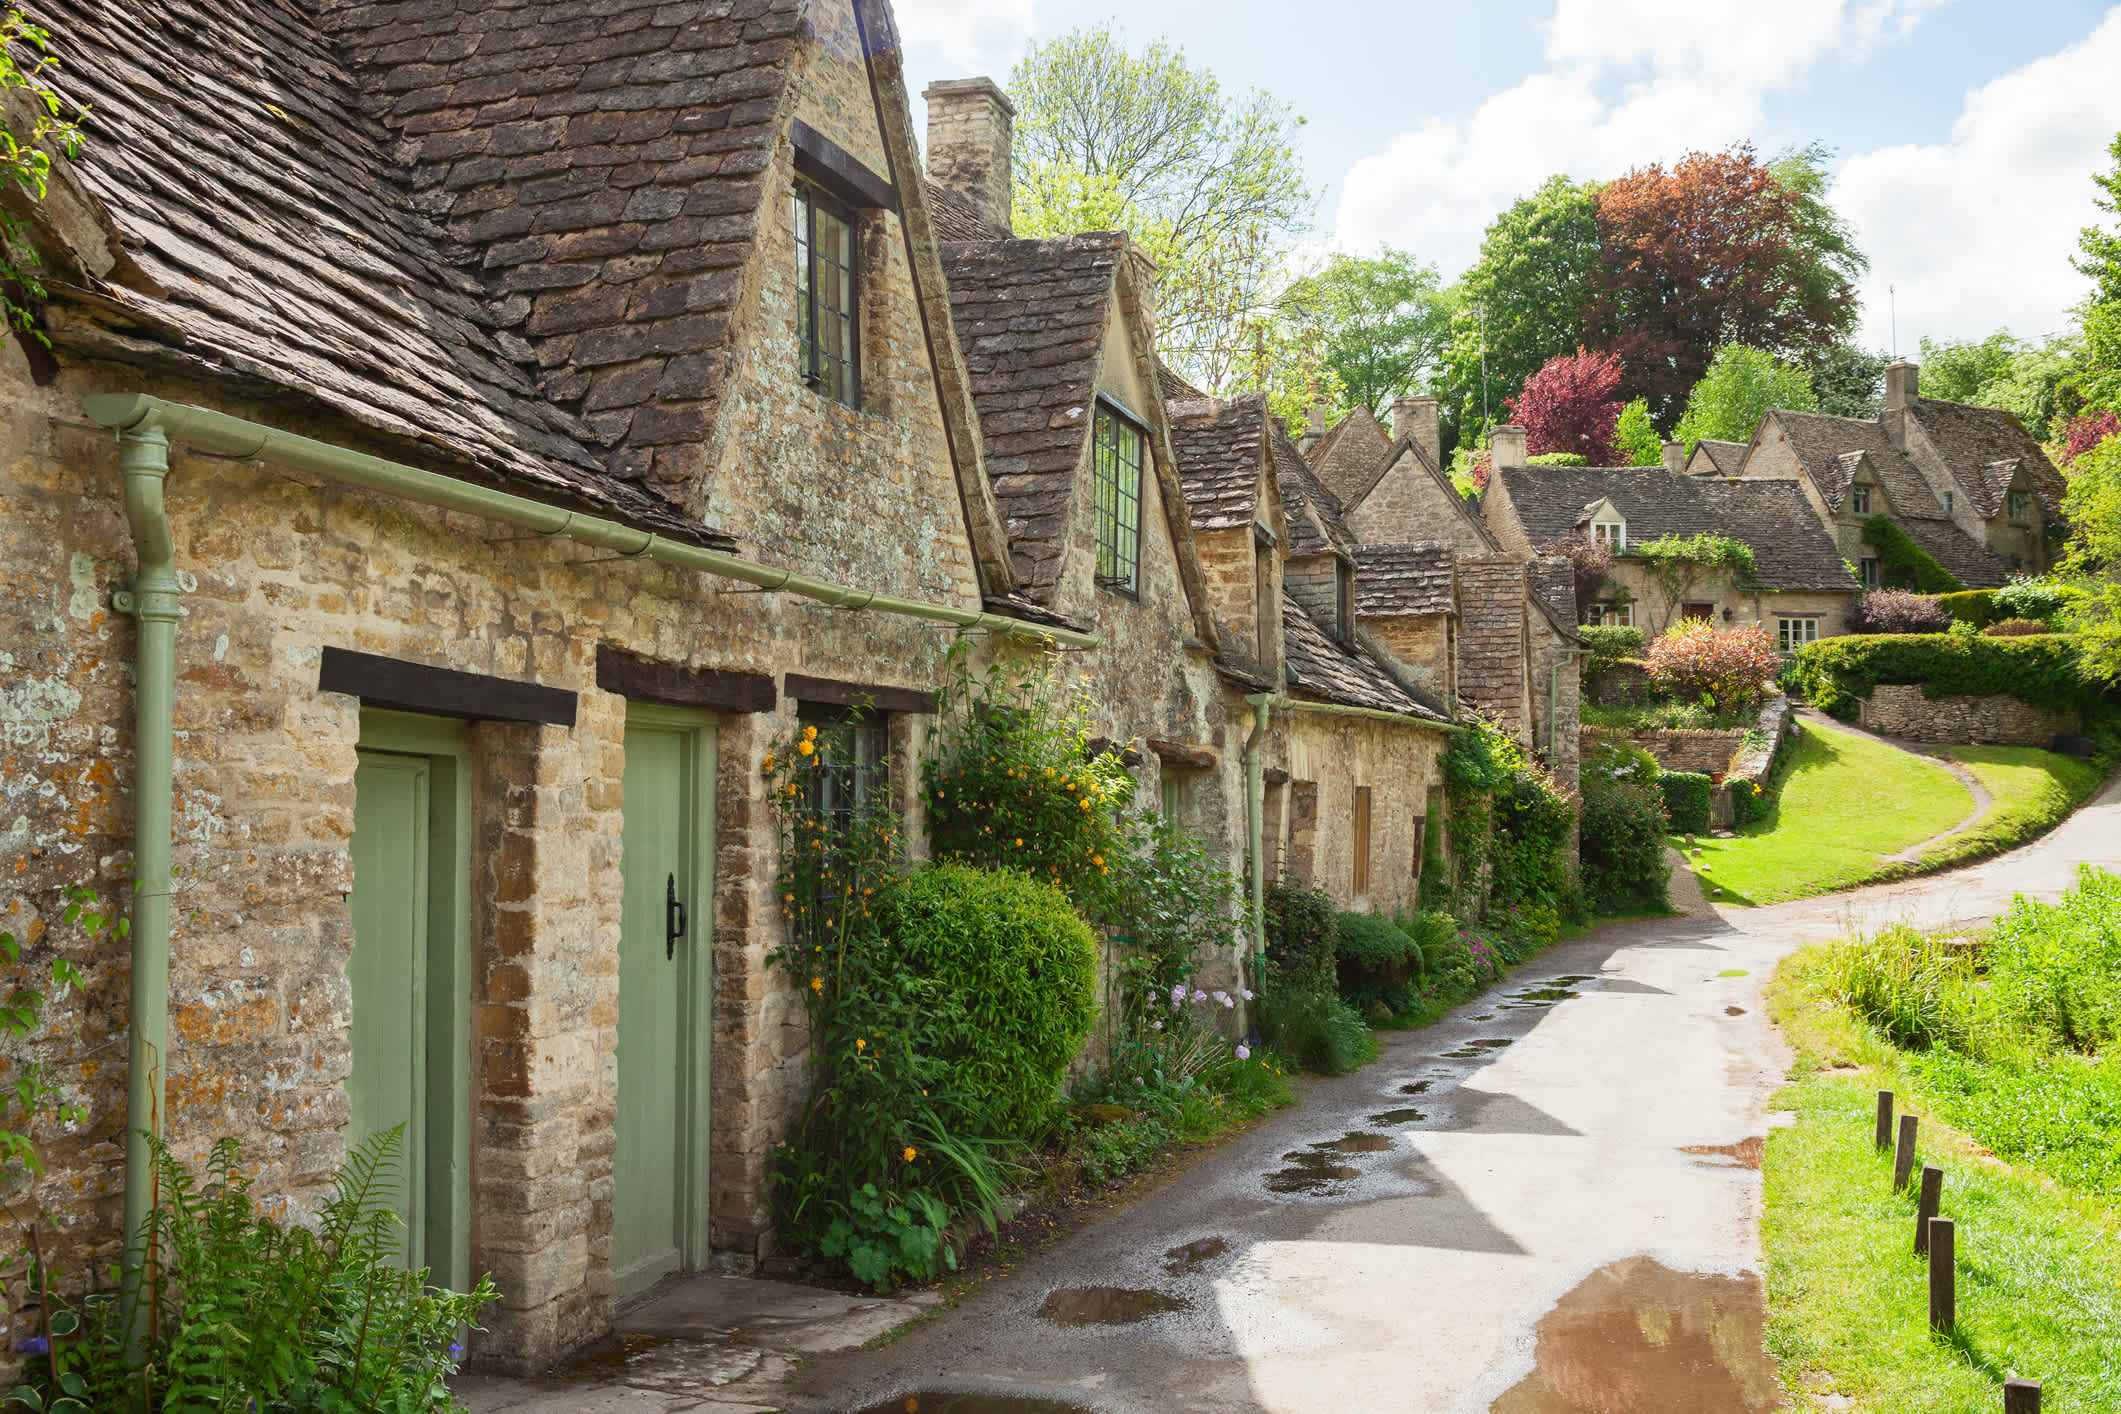 Vieilles rues bordées de beaux cottages dans un cadre pittoresque à Bibury dans les Cotswolds en Angleterre